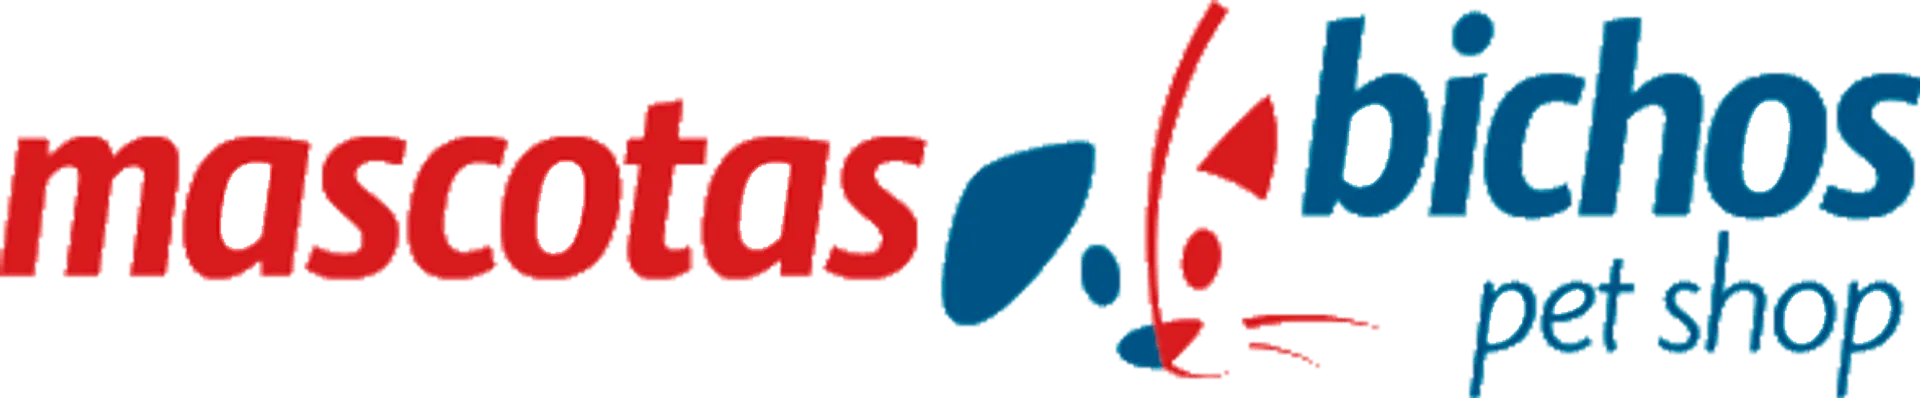 BICHOS logo de catálogo